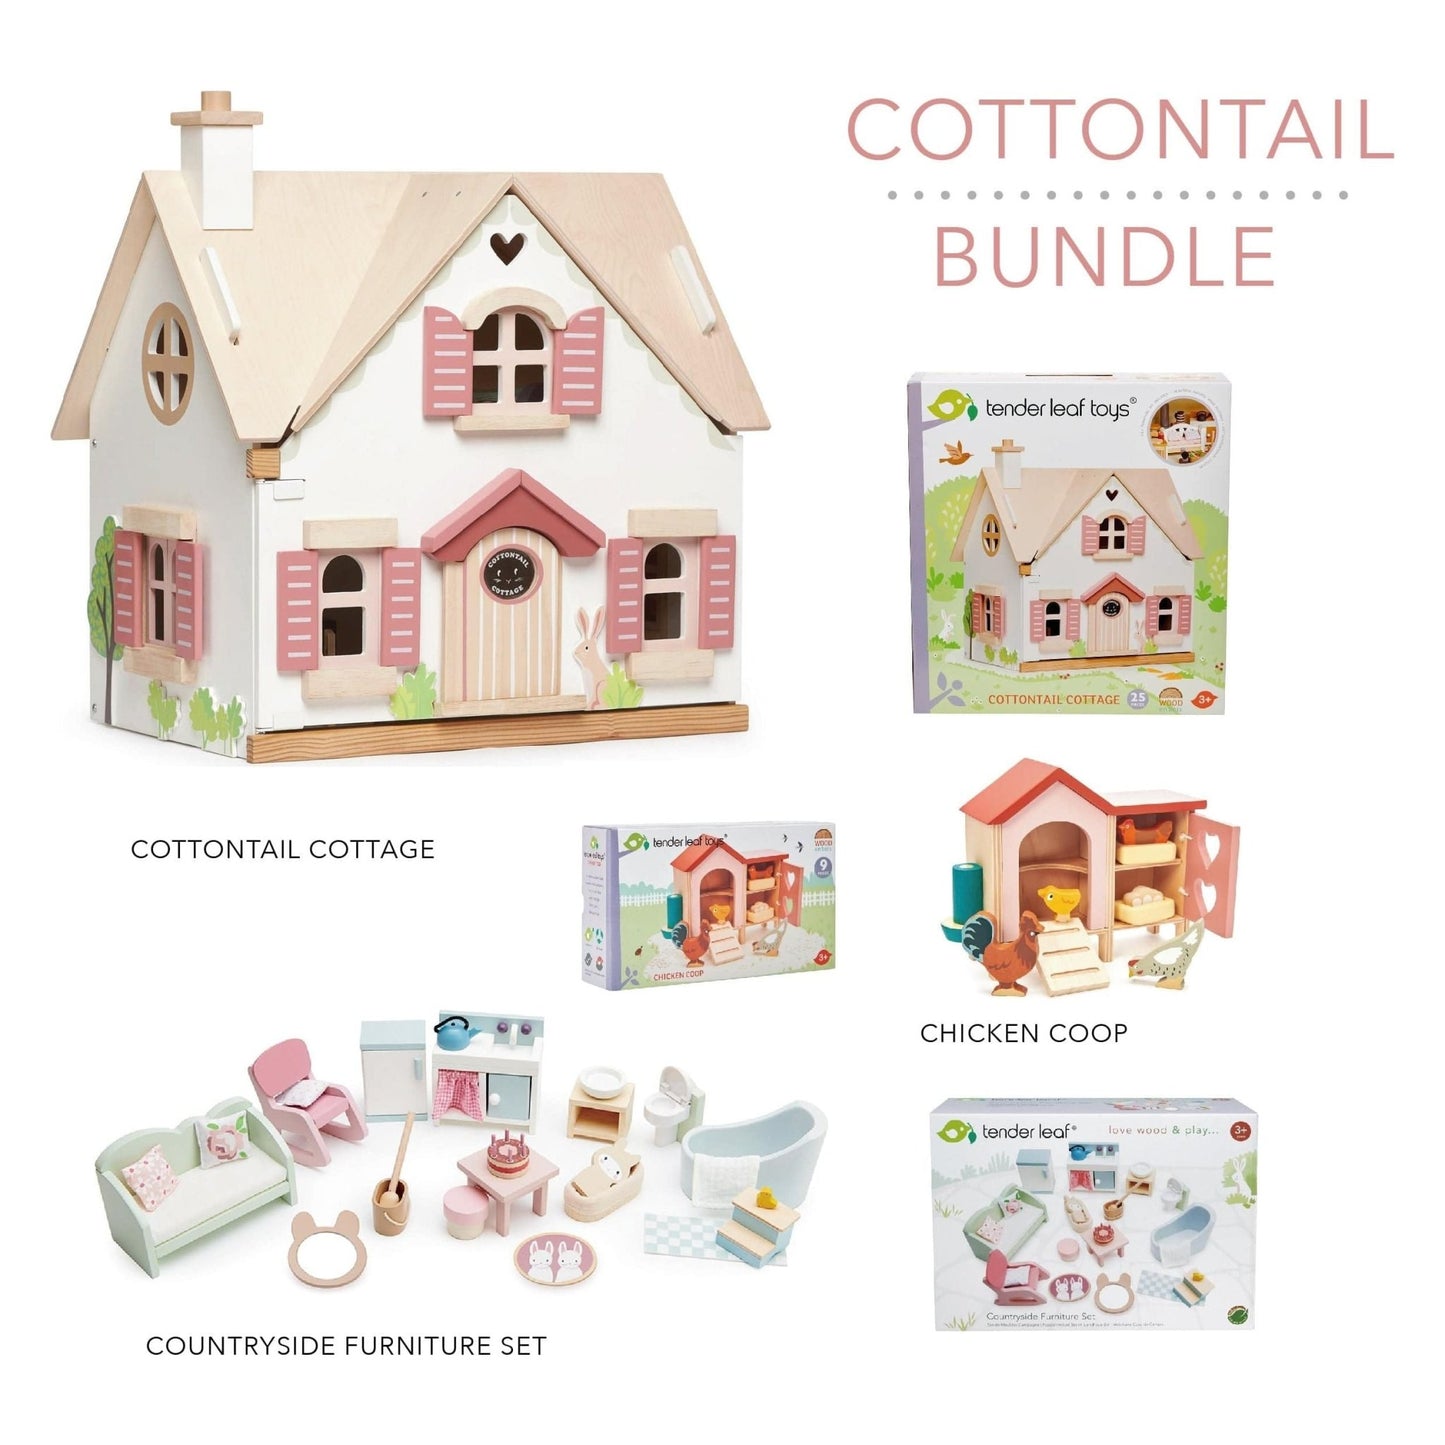 Cottontail Cottage Bundle - The Online Toy Shop - Dollhouse - 4